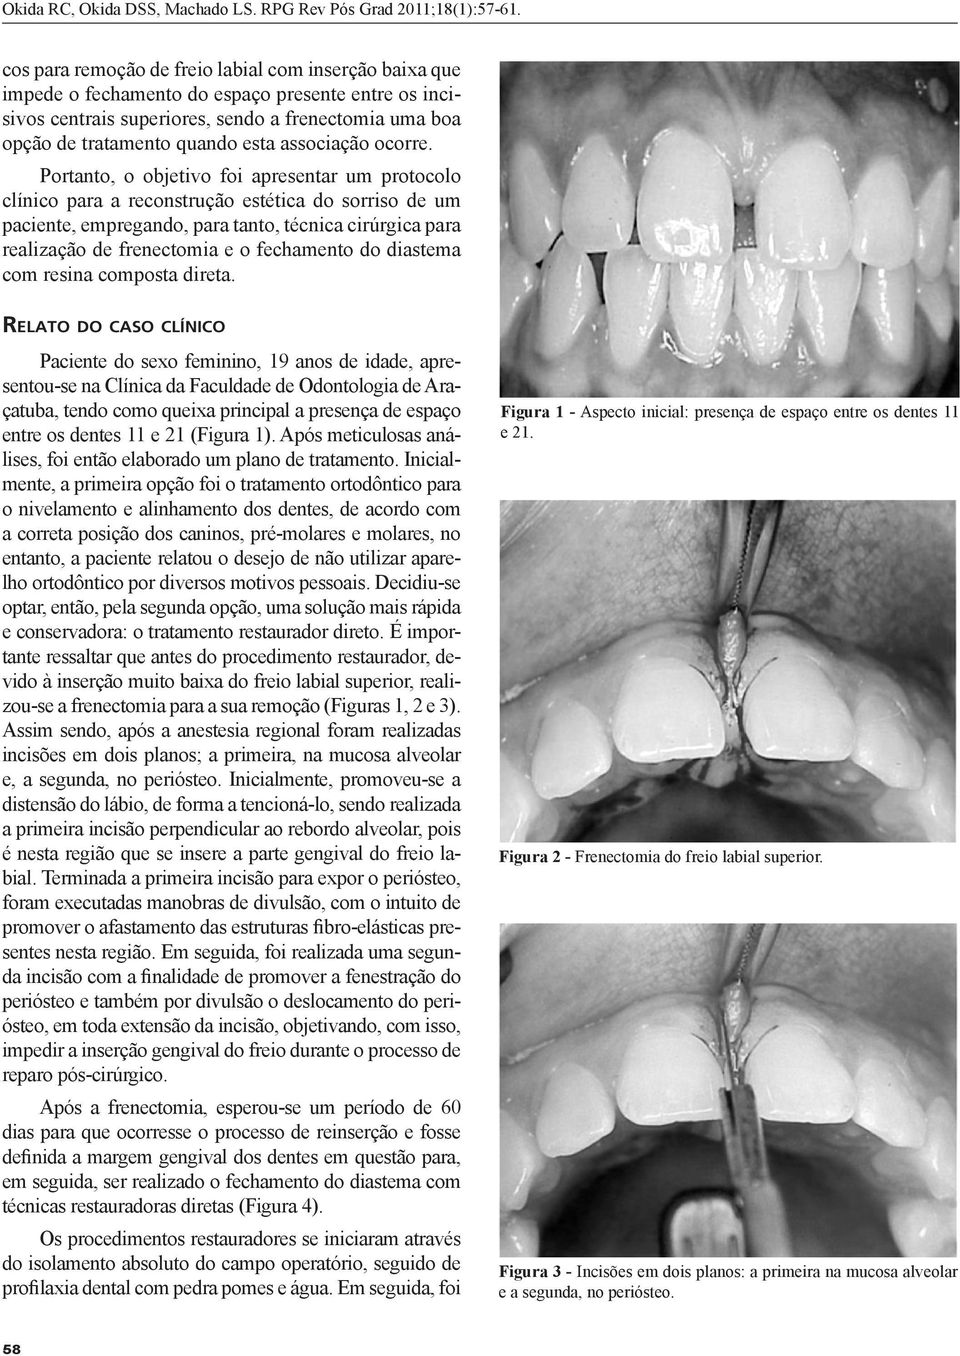 Portanto, o objetivo foi apresentar um protocolo clínico para a reconstrução estética do sorriso de um paciente, empregando, para tanto, técnica cirúrgica para realização de frenectomia e o